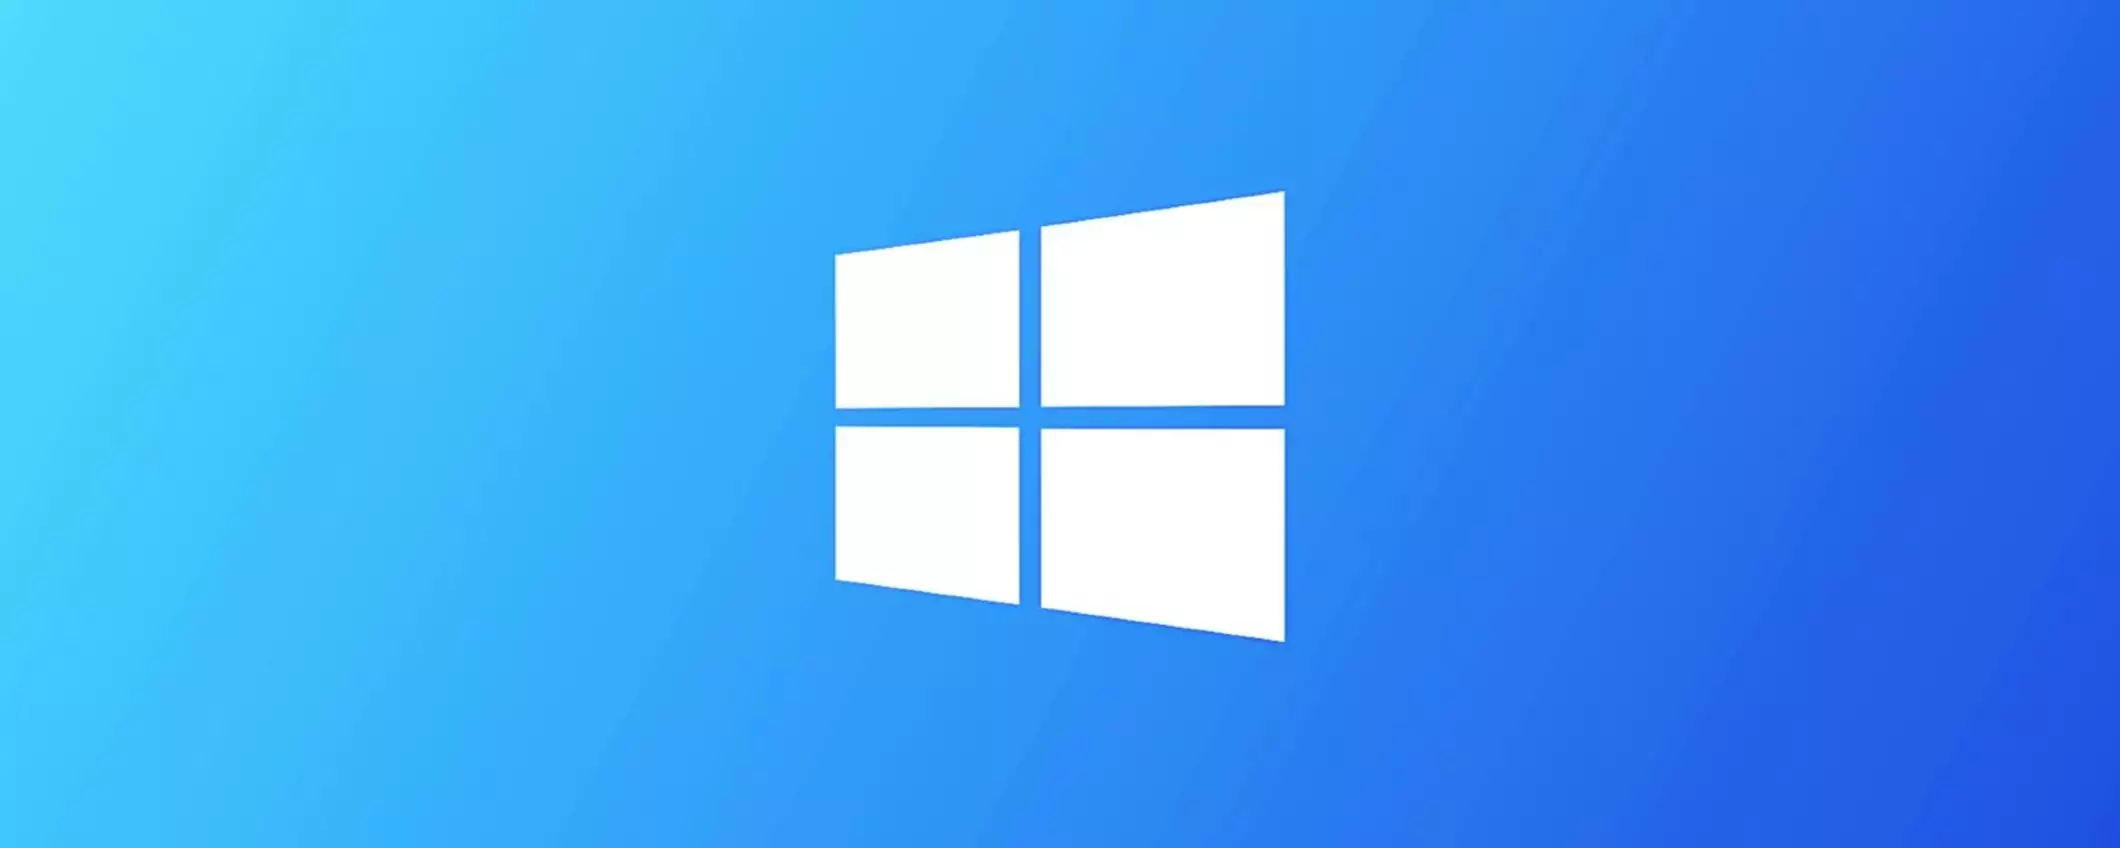 Windows 10: problemi con la patch KB5034441 (update)